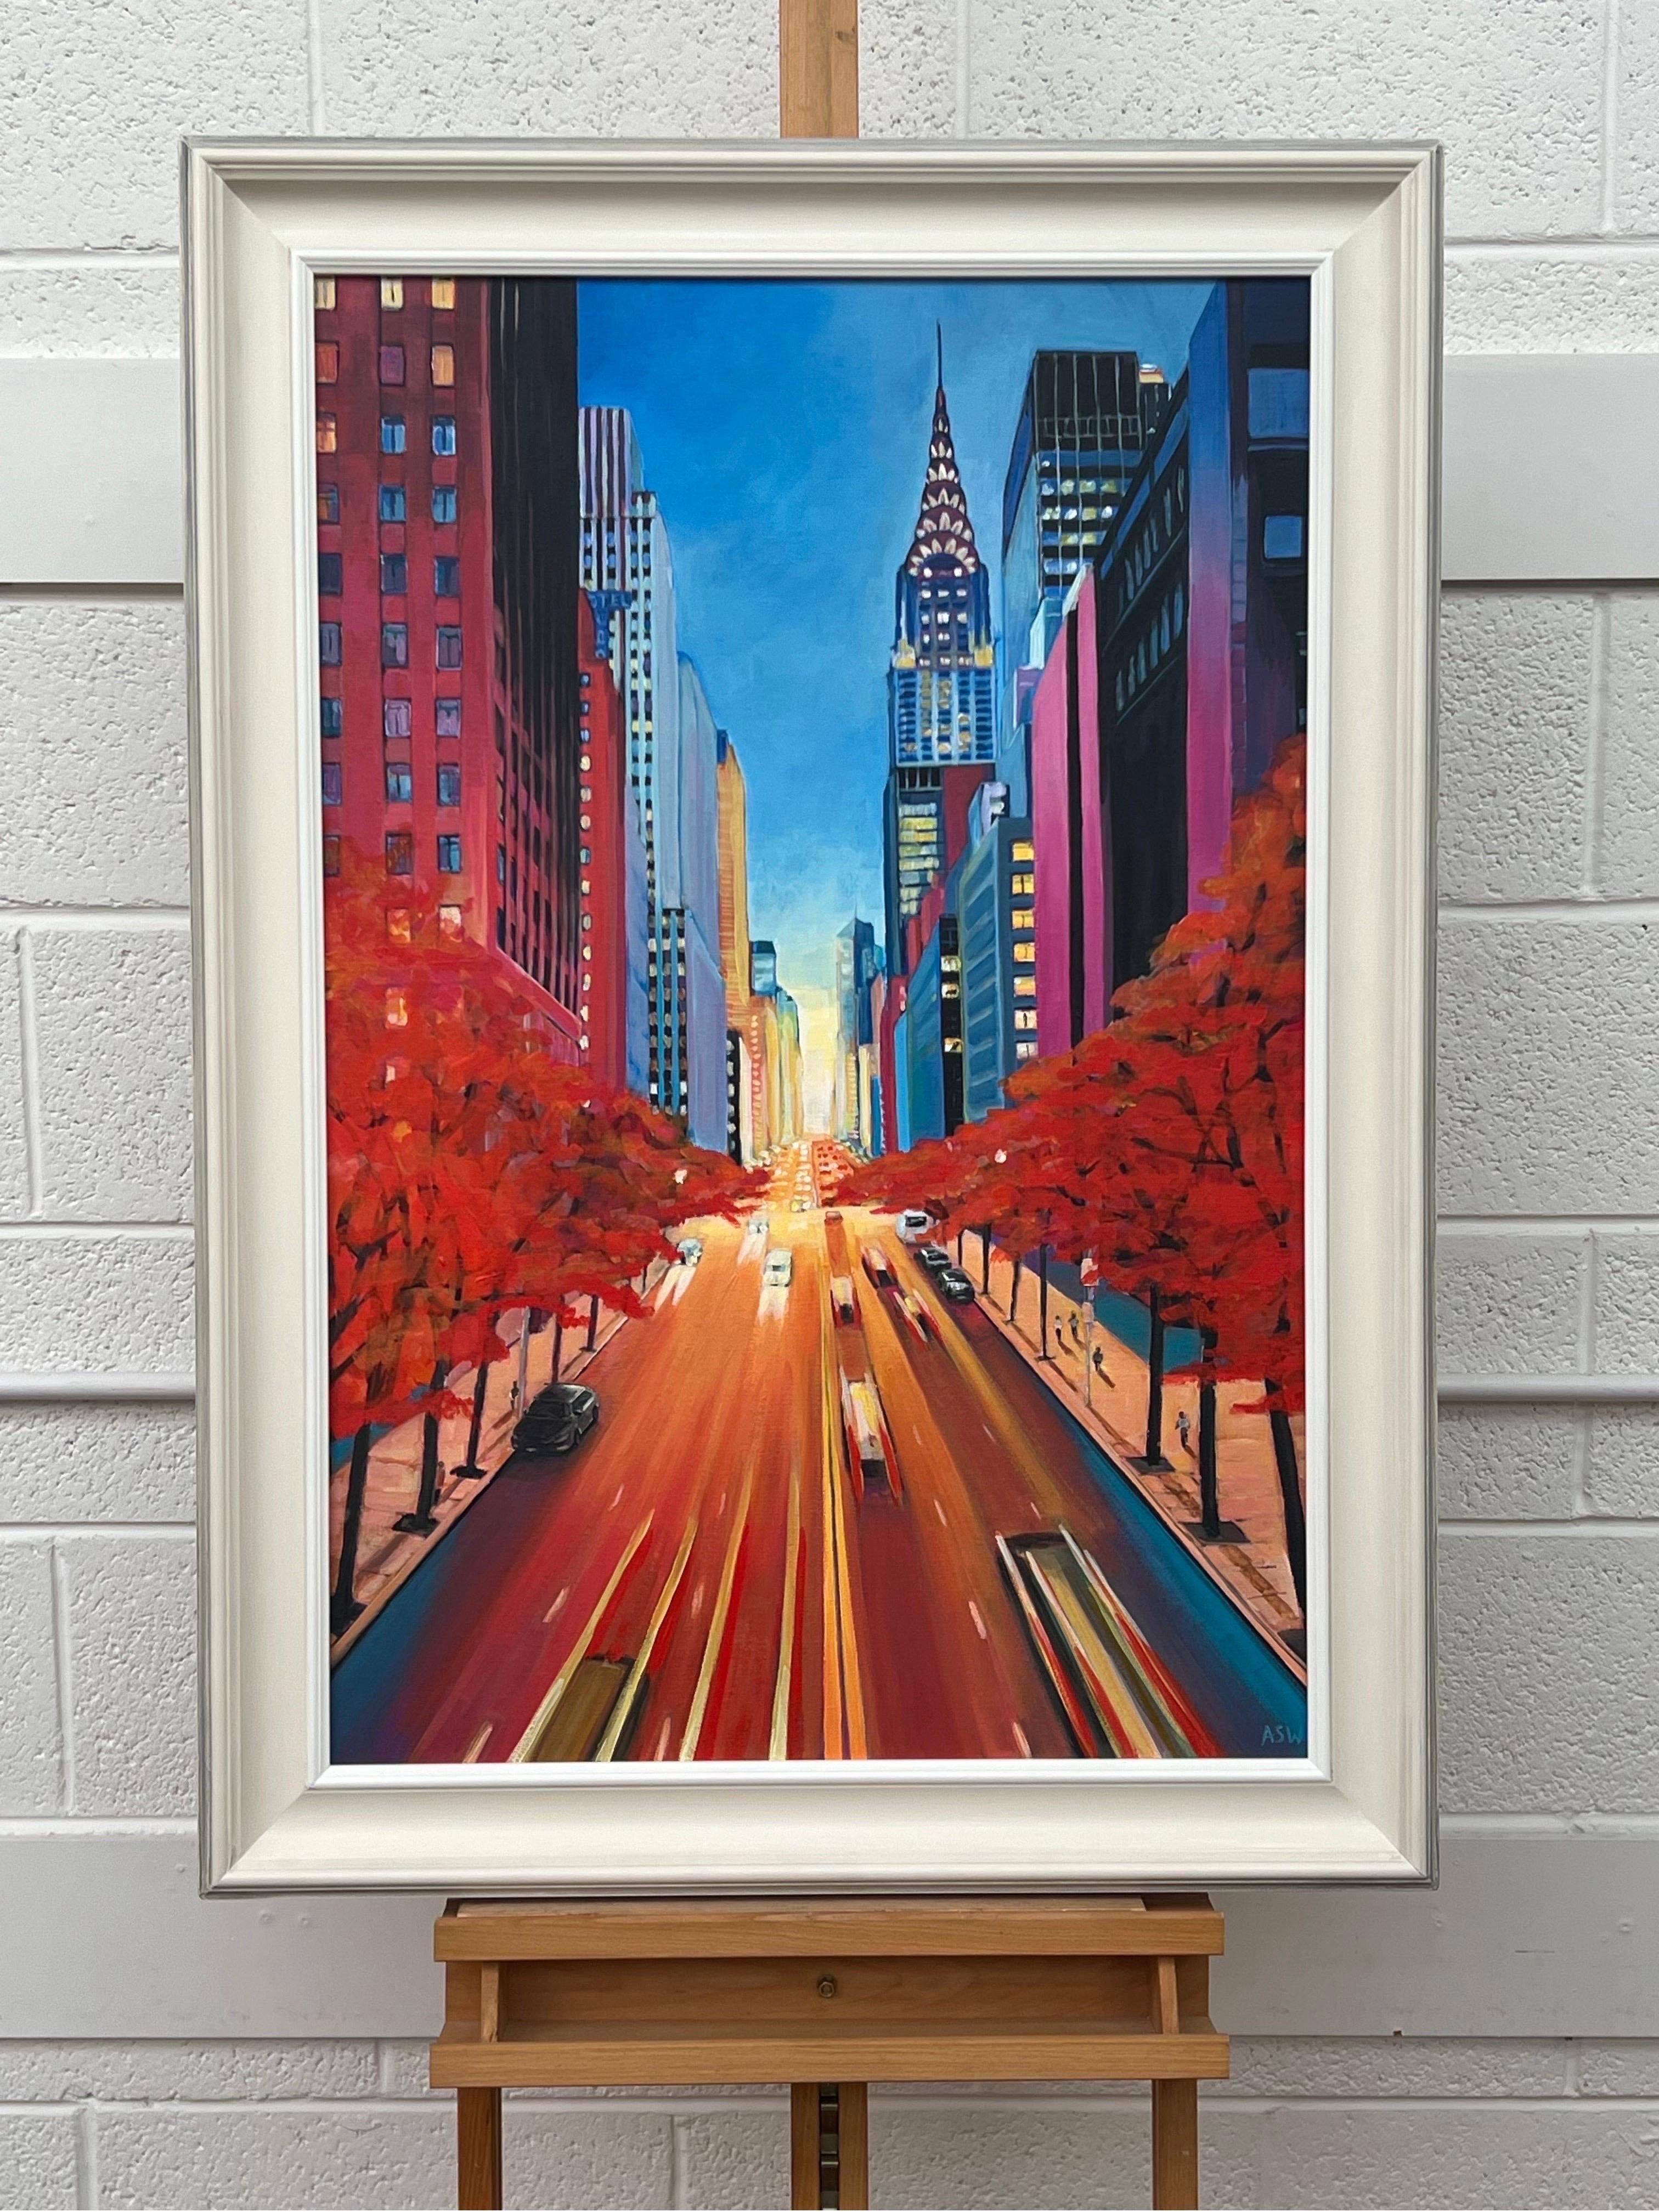 Peinture du Chrysler Building 42nd Street New York City par l'artiste britannique contemporaine Angela Wakefield.

L'œuvre d'art mesure 24 x 36 pouces
Le cadre mesure 30 x 42 pouces

Encadré dans une moulure en bois de haute qualité, blanc cassé,